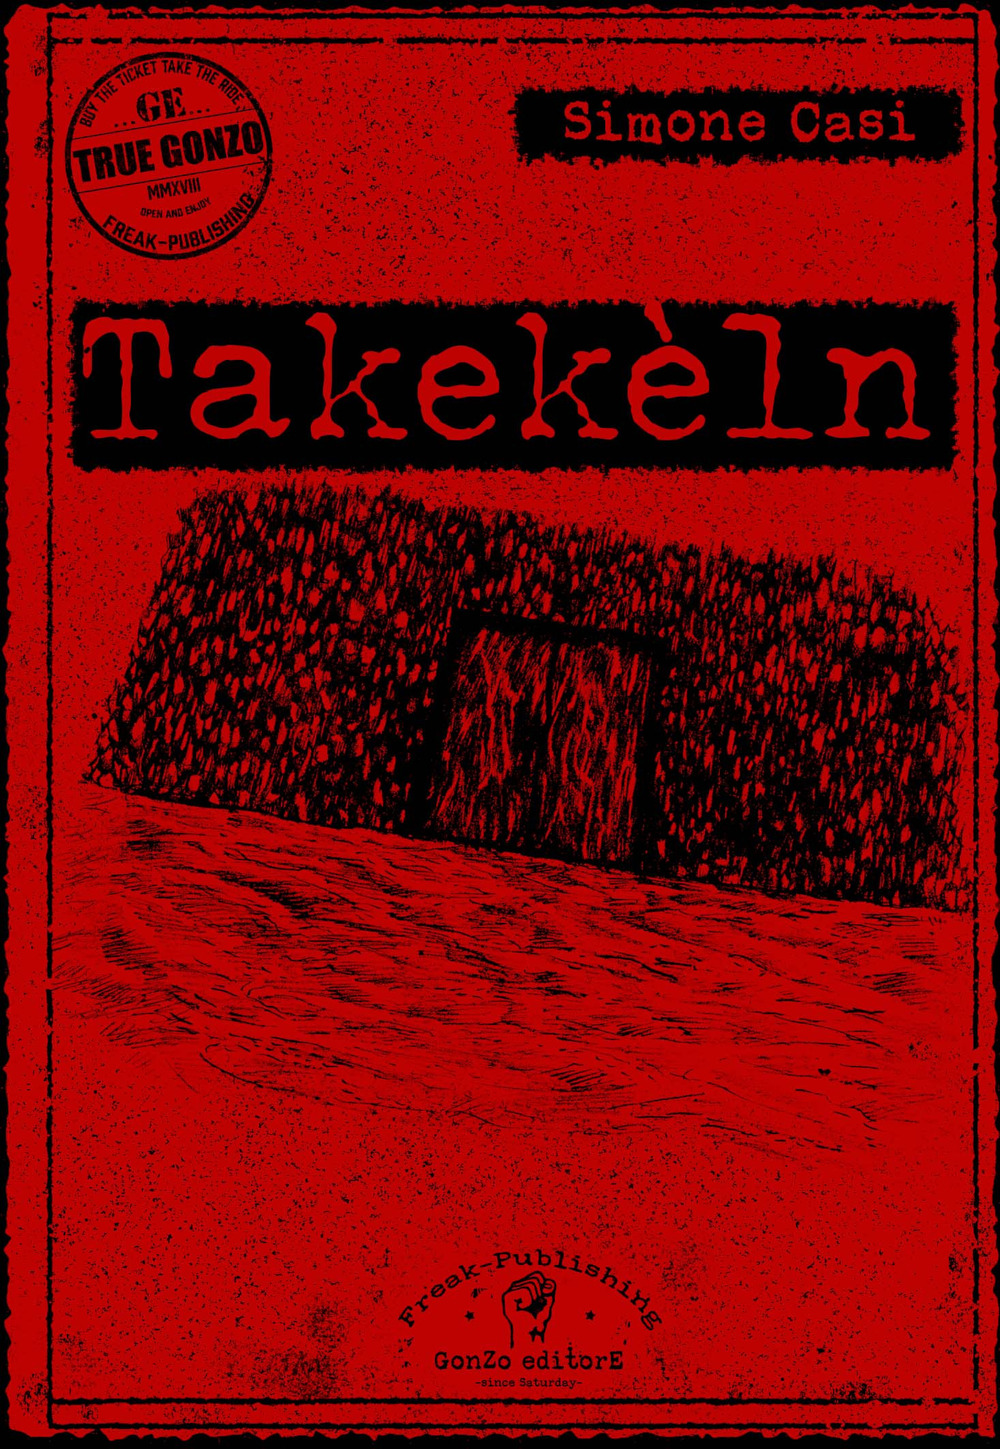 Takekèln